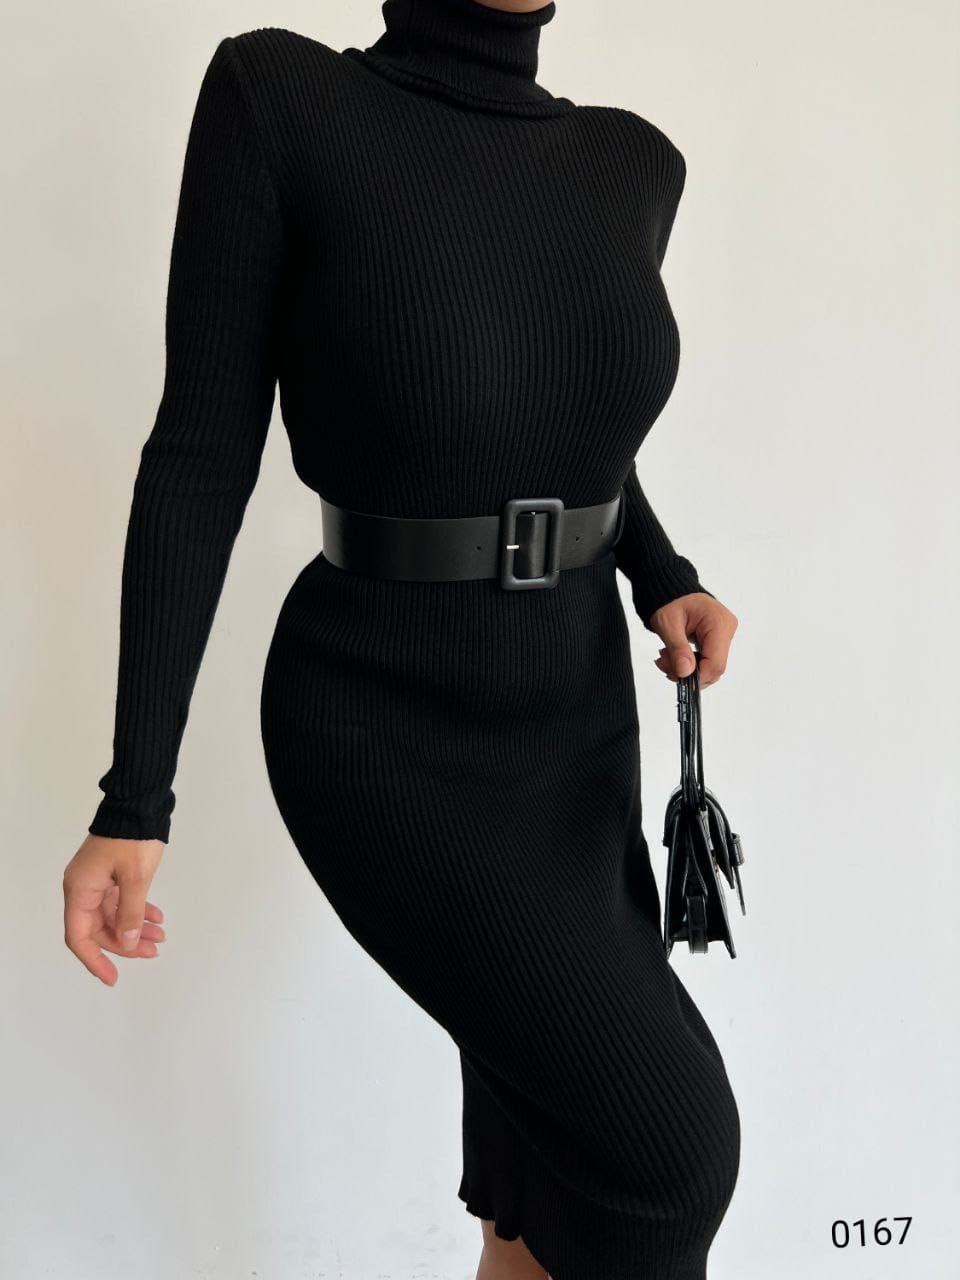 Дамска рокля DELIQ  https://bvseductive.com/products/womans-s-dresses-deliq  модерна рокля в класически черен цвят моделът е съставен от приятна и мека материя с поло яка и колан изчистен дизайн с права кройка перфектно предложение....